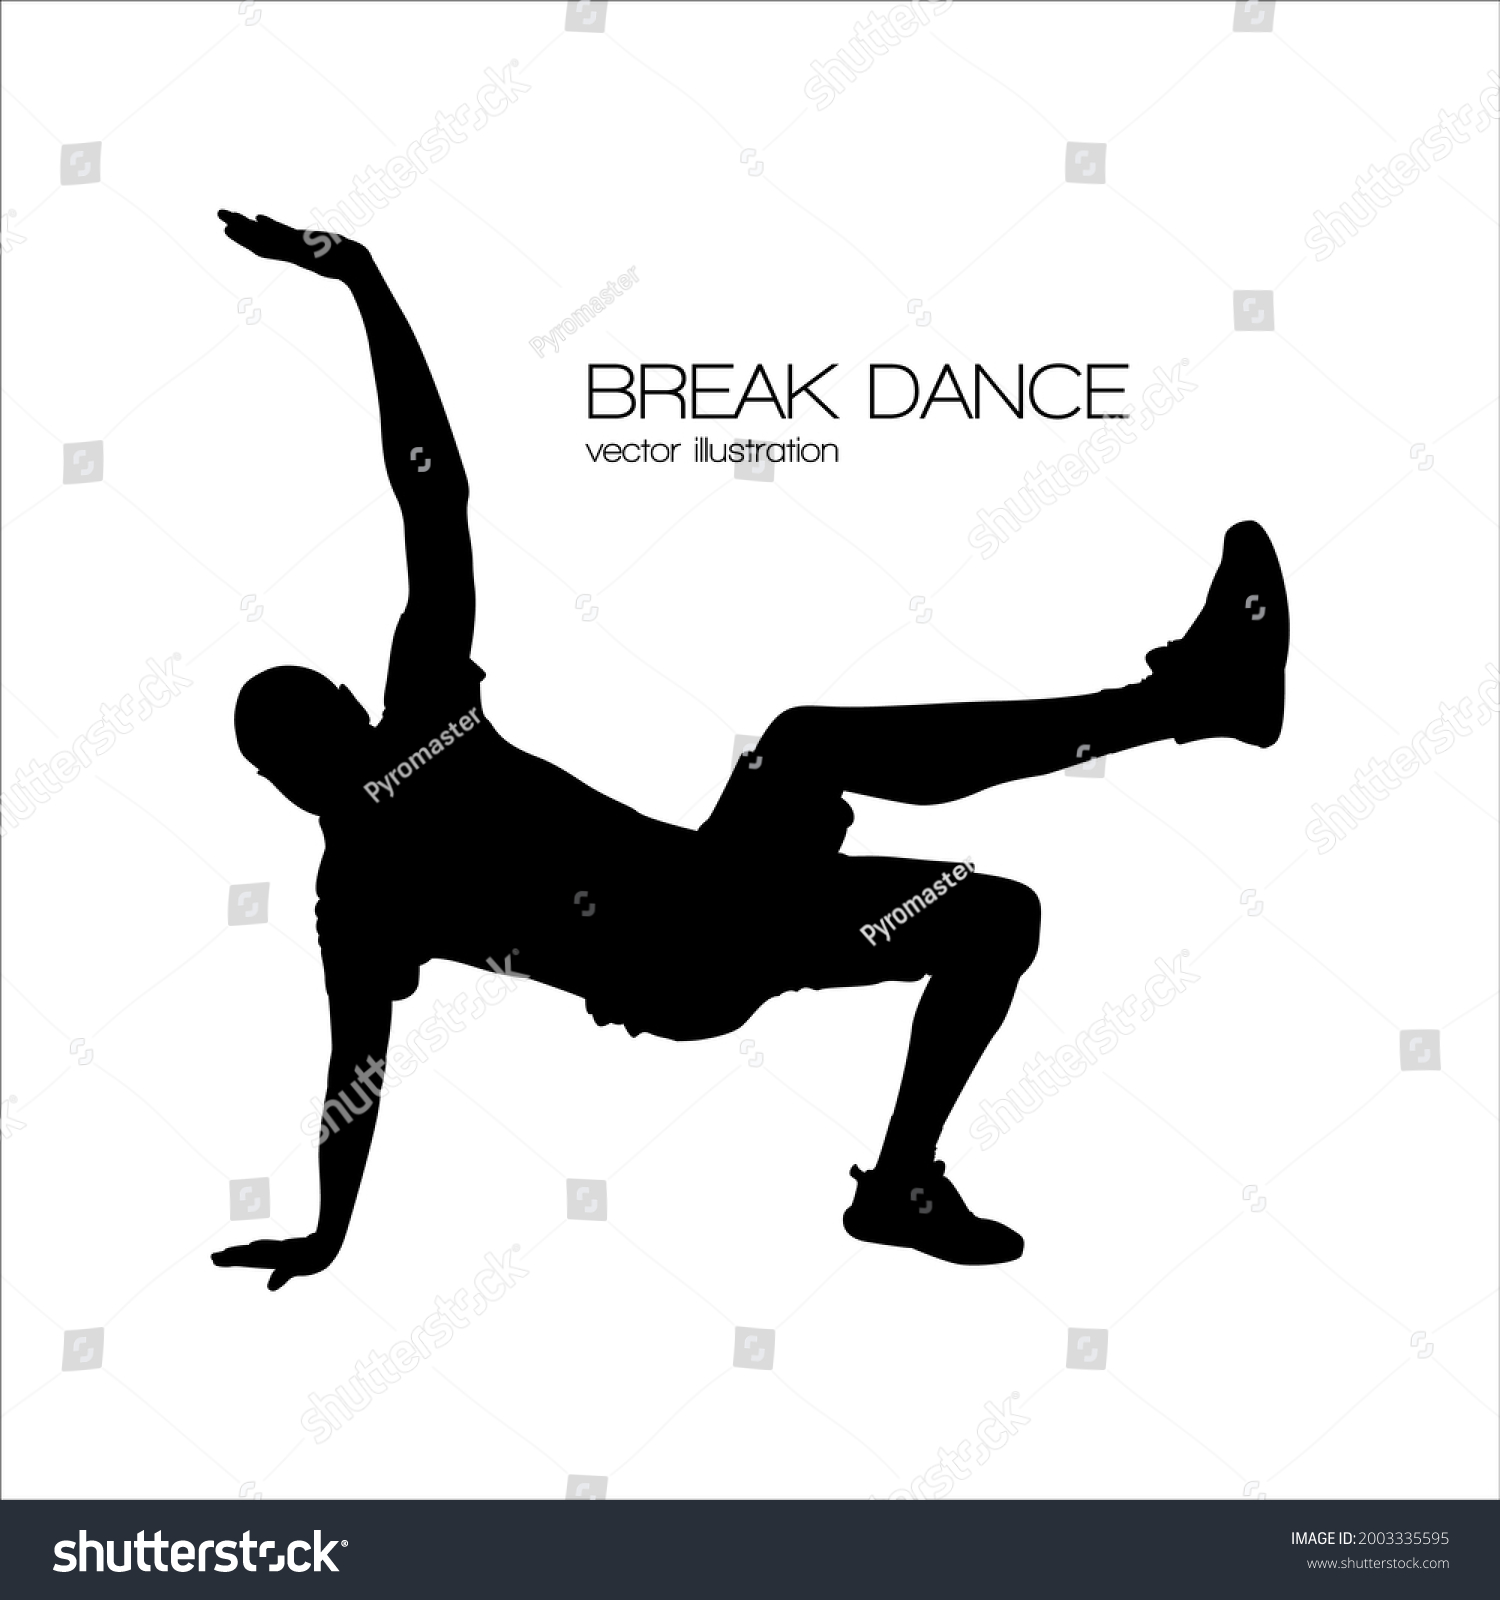 SVG of break dancer bboy silhouette isolated vector illustration svg